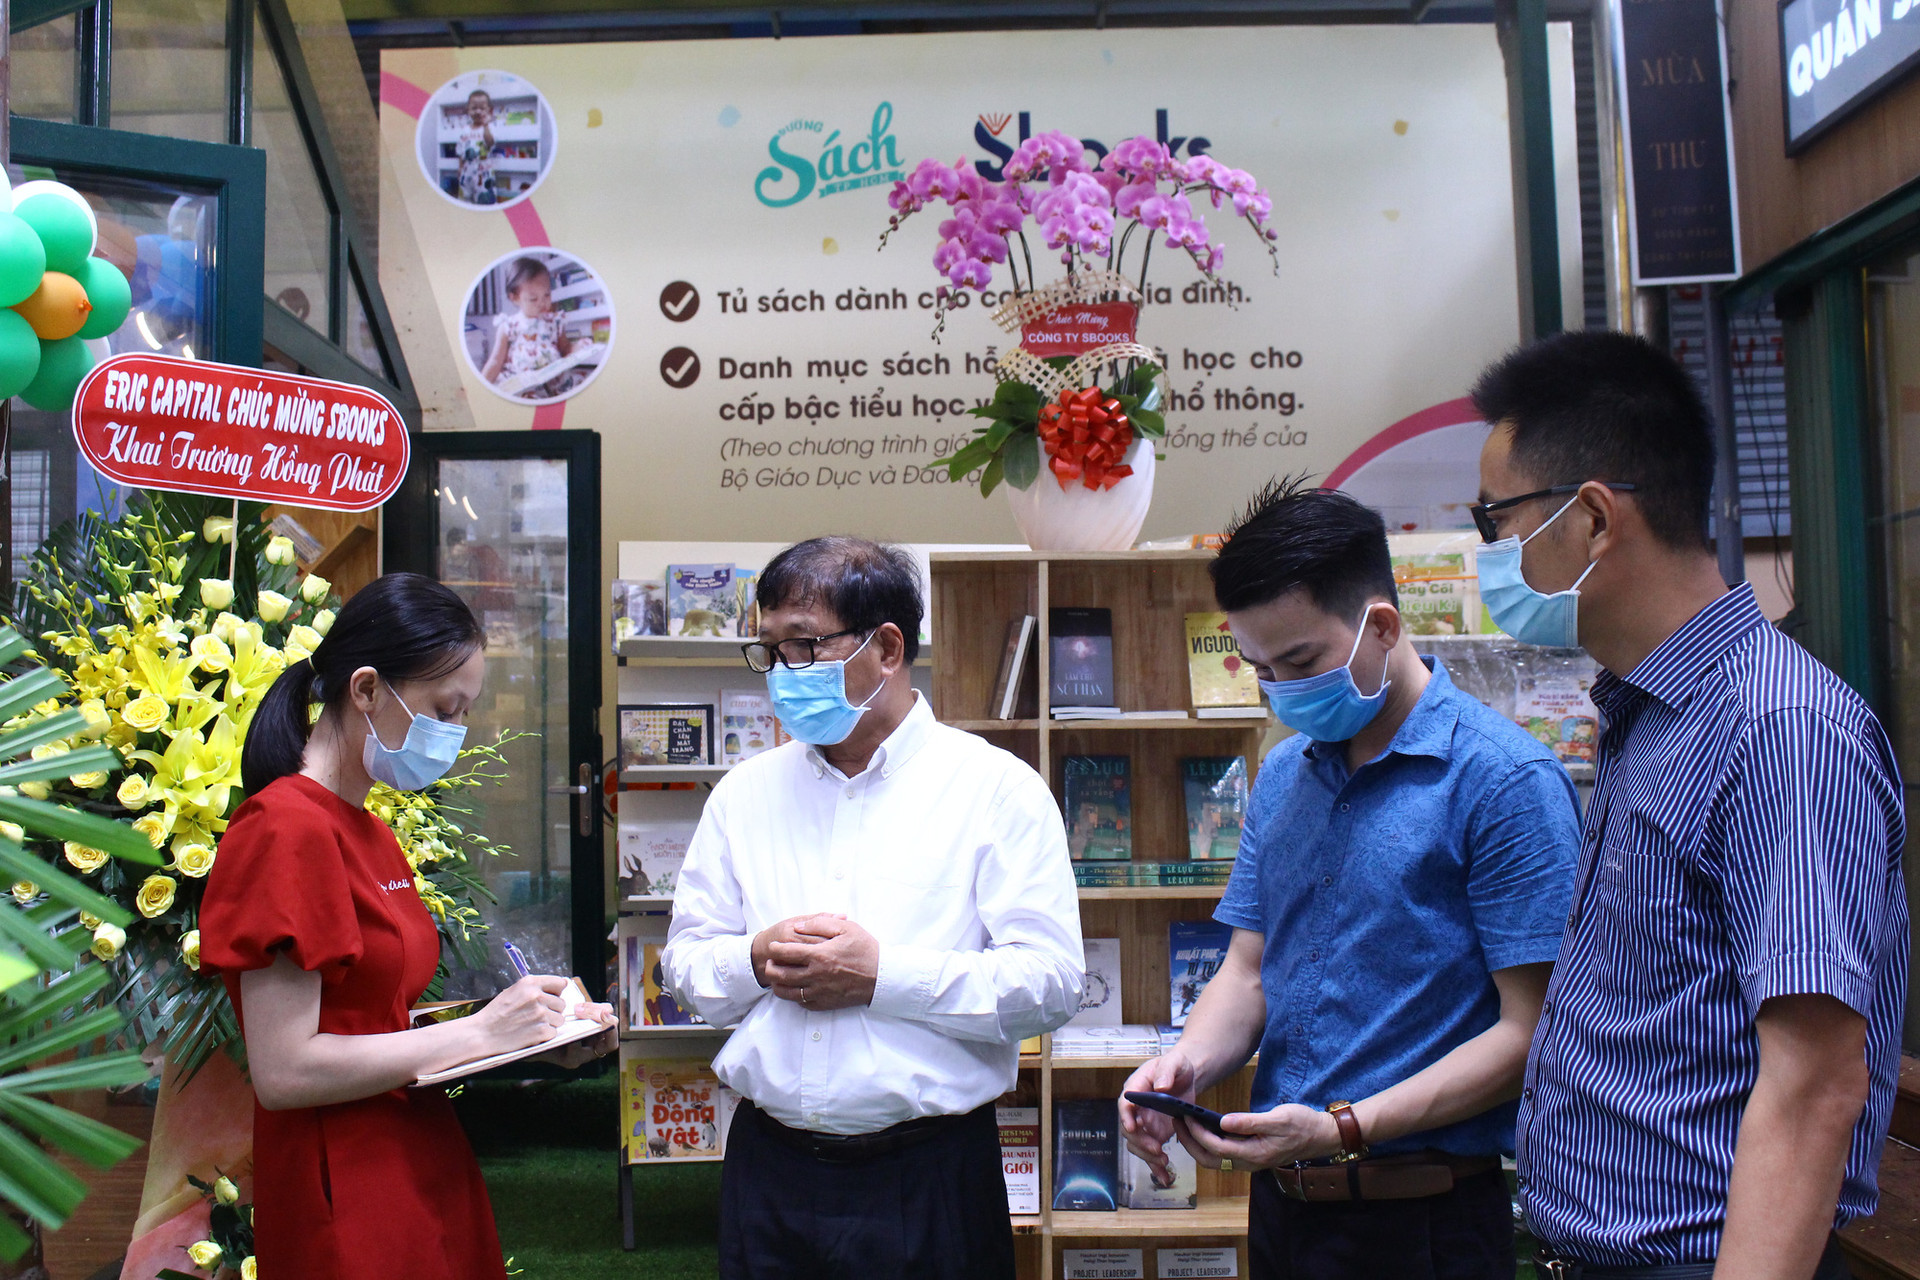 Khai trương tủ sách gia đình và danh mục sách cho học sinh được khai trương tại đường sách Hồ Chí Minh - Ảnh 2.